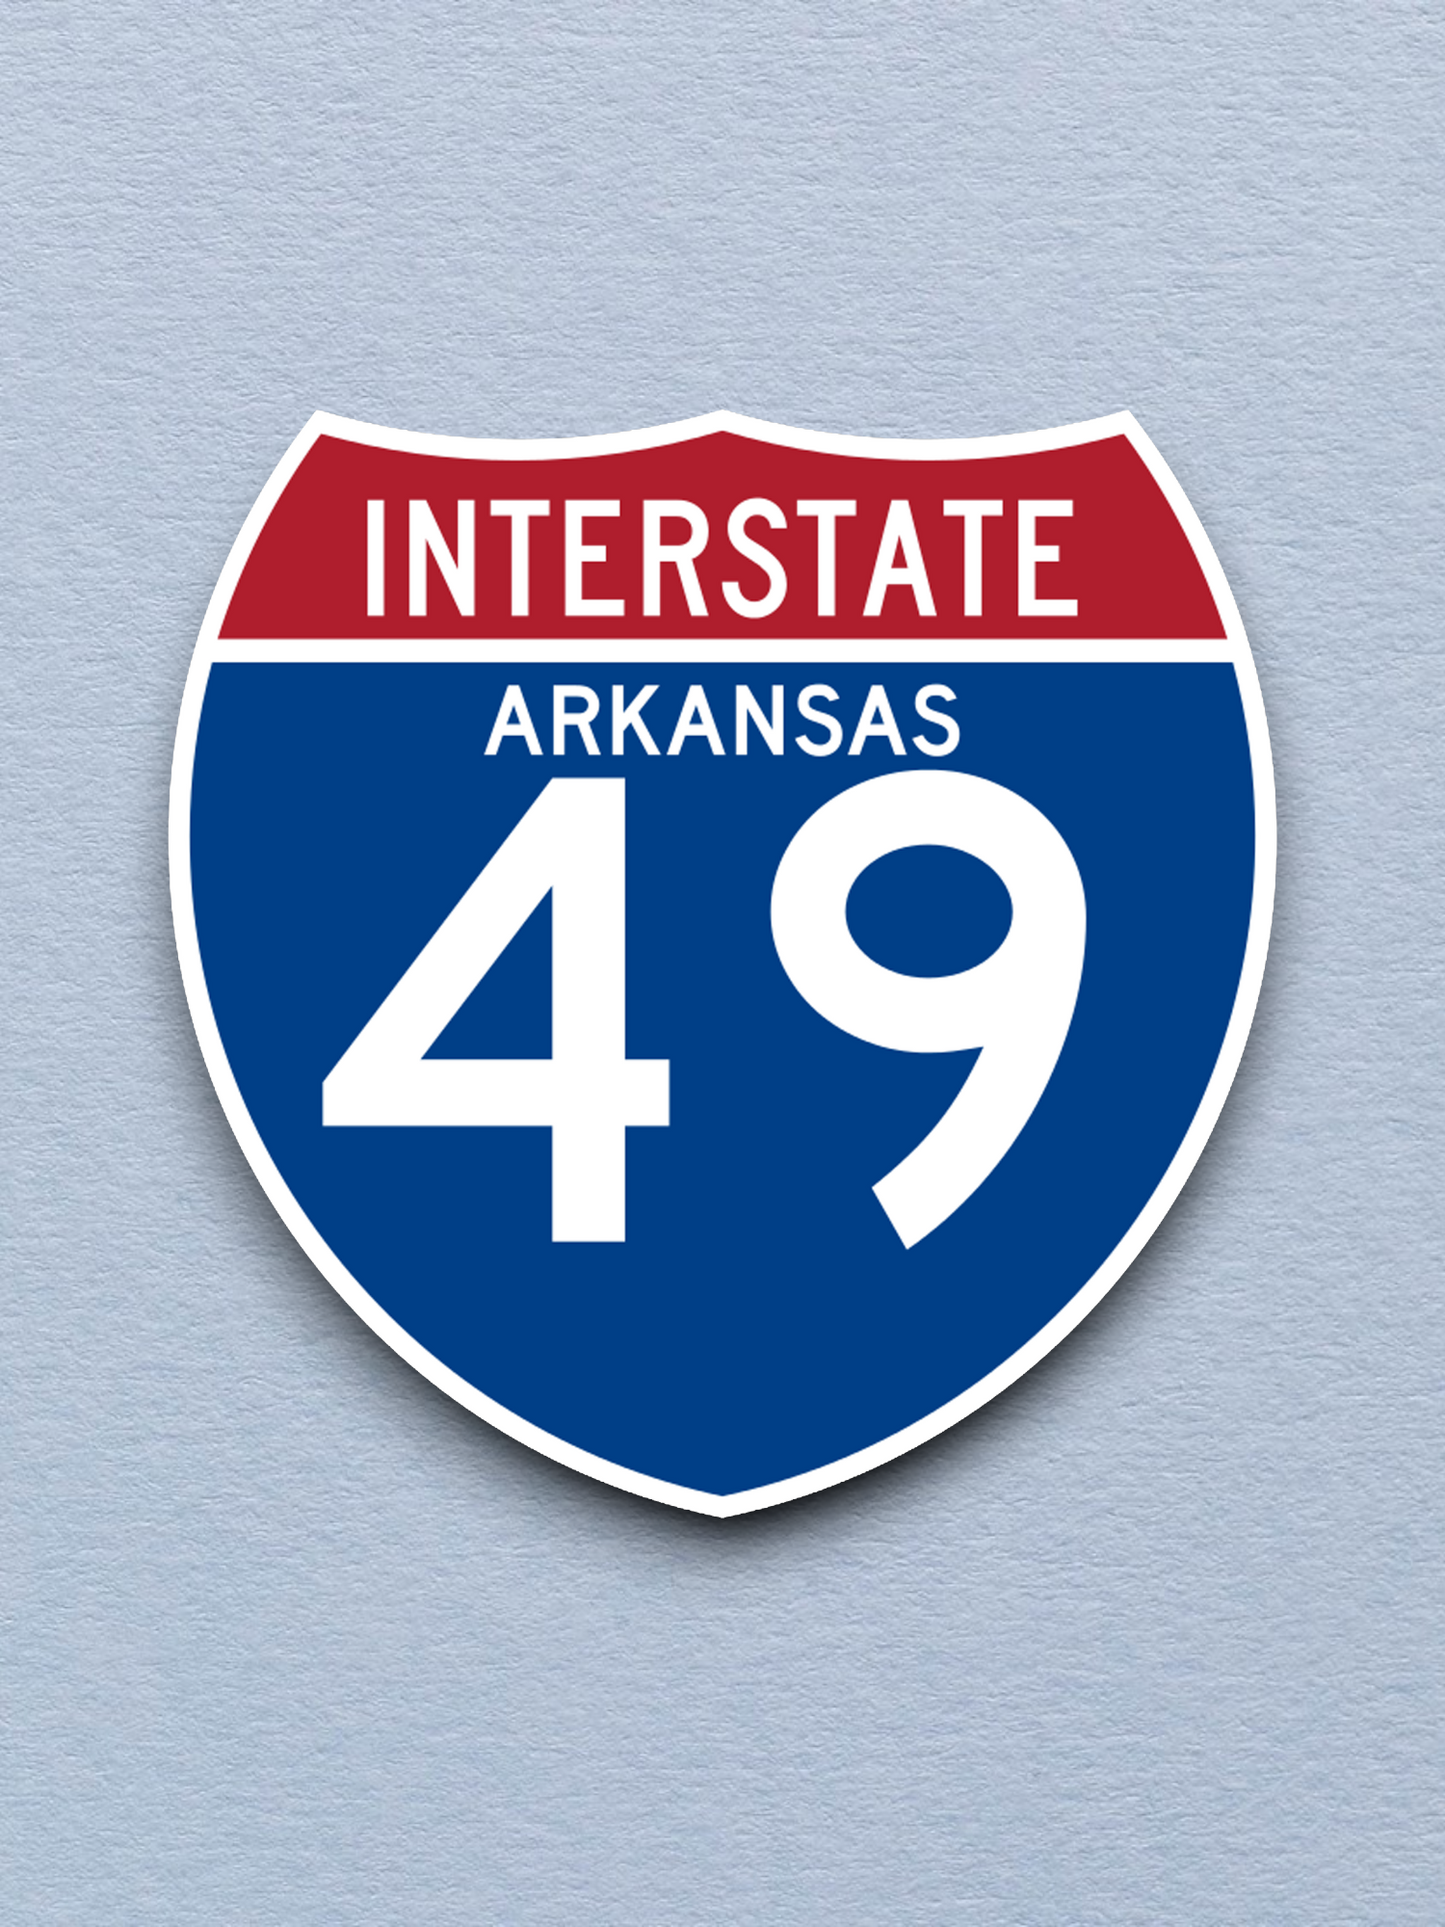 Interstate I-49 Arkansas - Road Sign Sticker